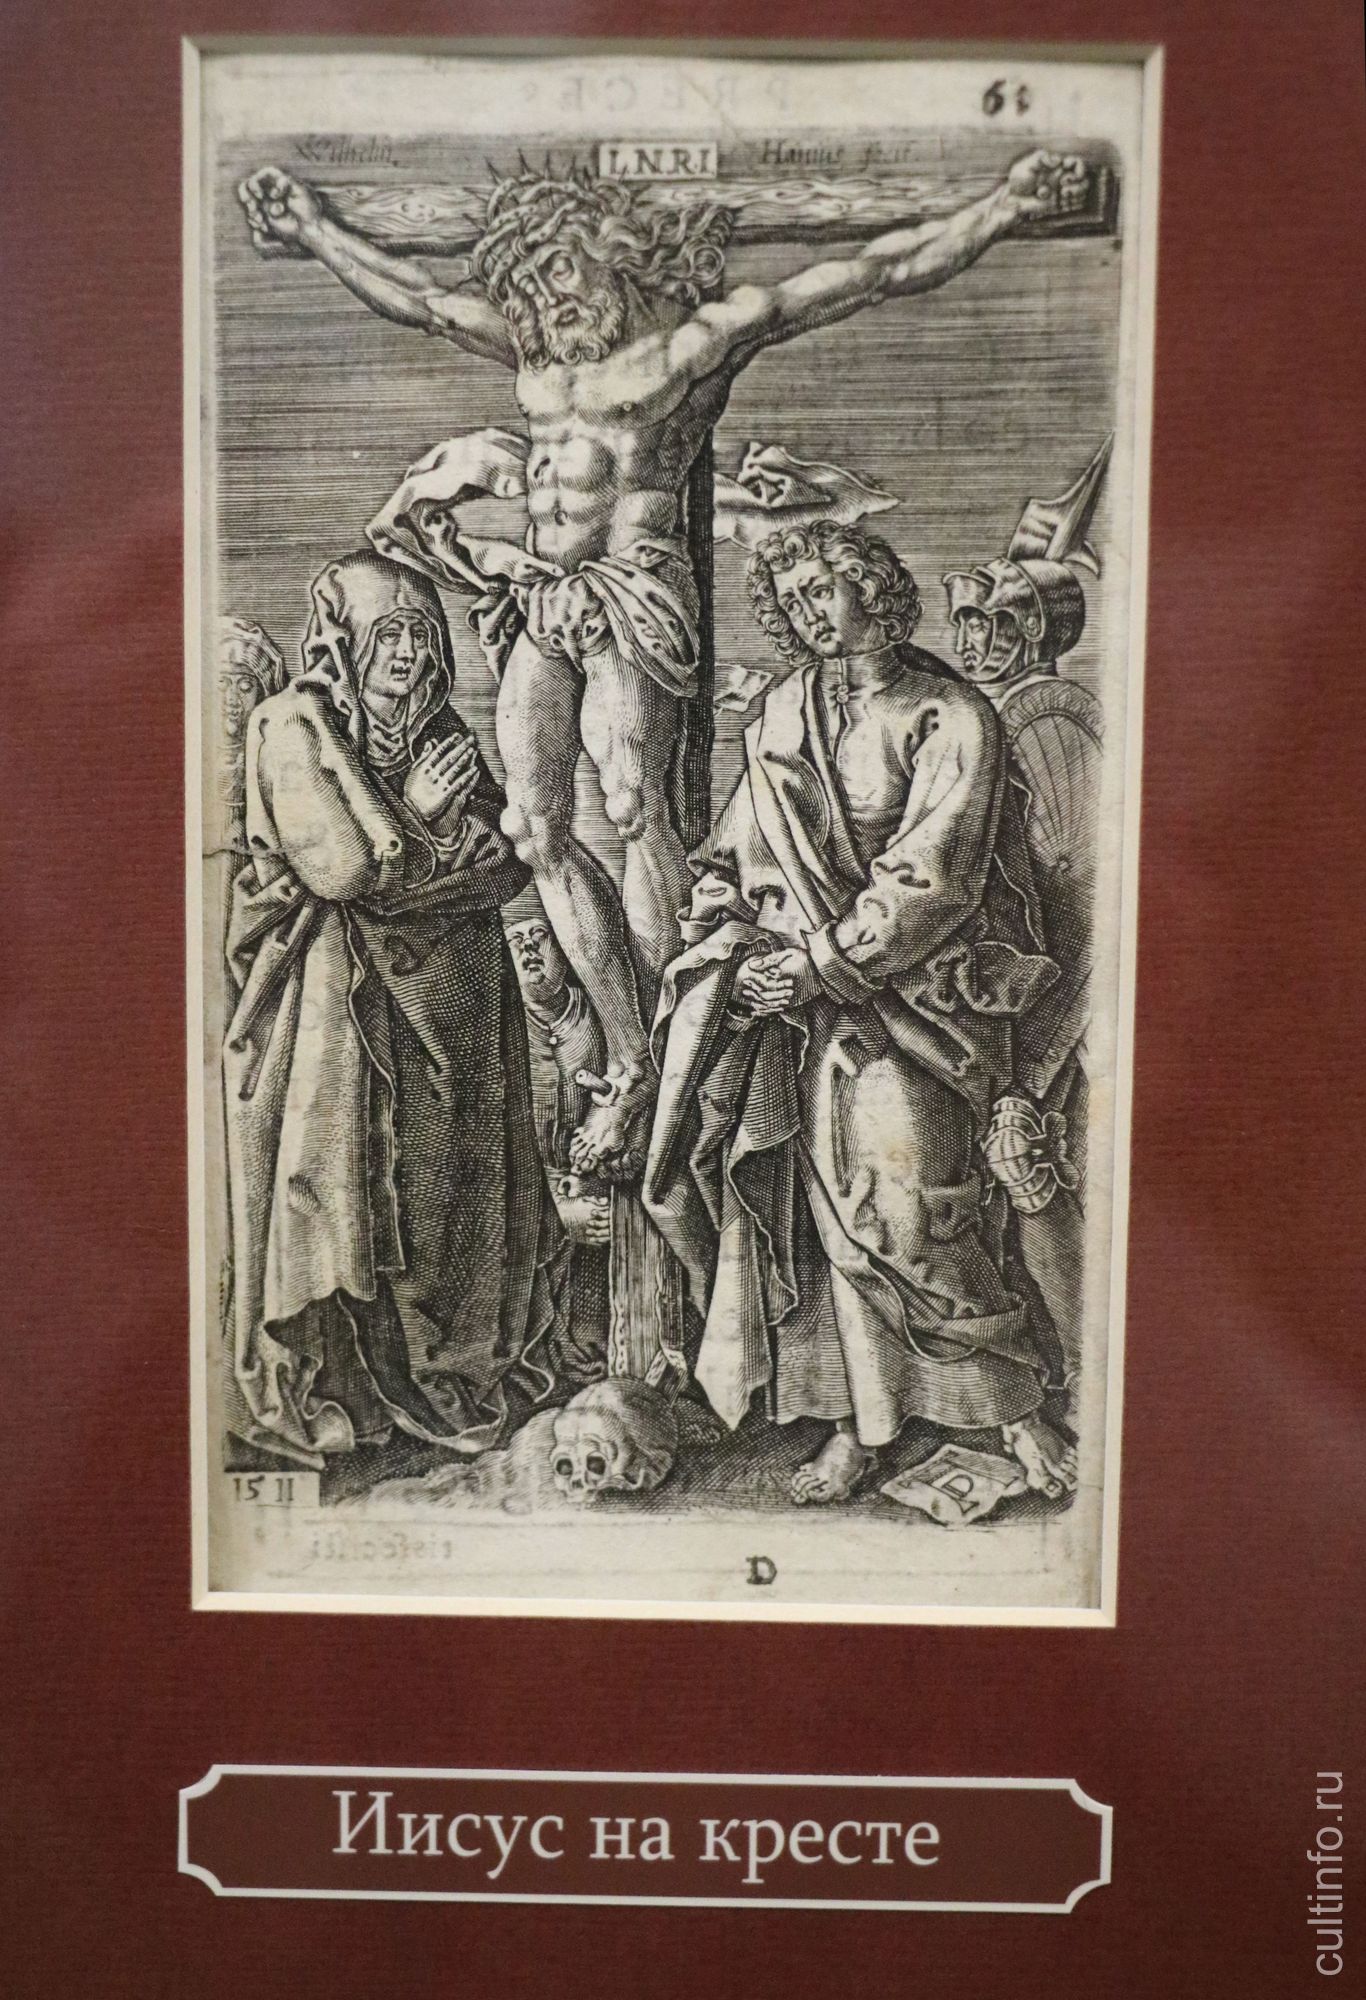 А.Дюрер. Иисус на кресте. Из серии «Малые страсти», 1508 г.